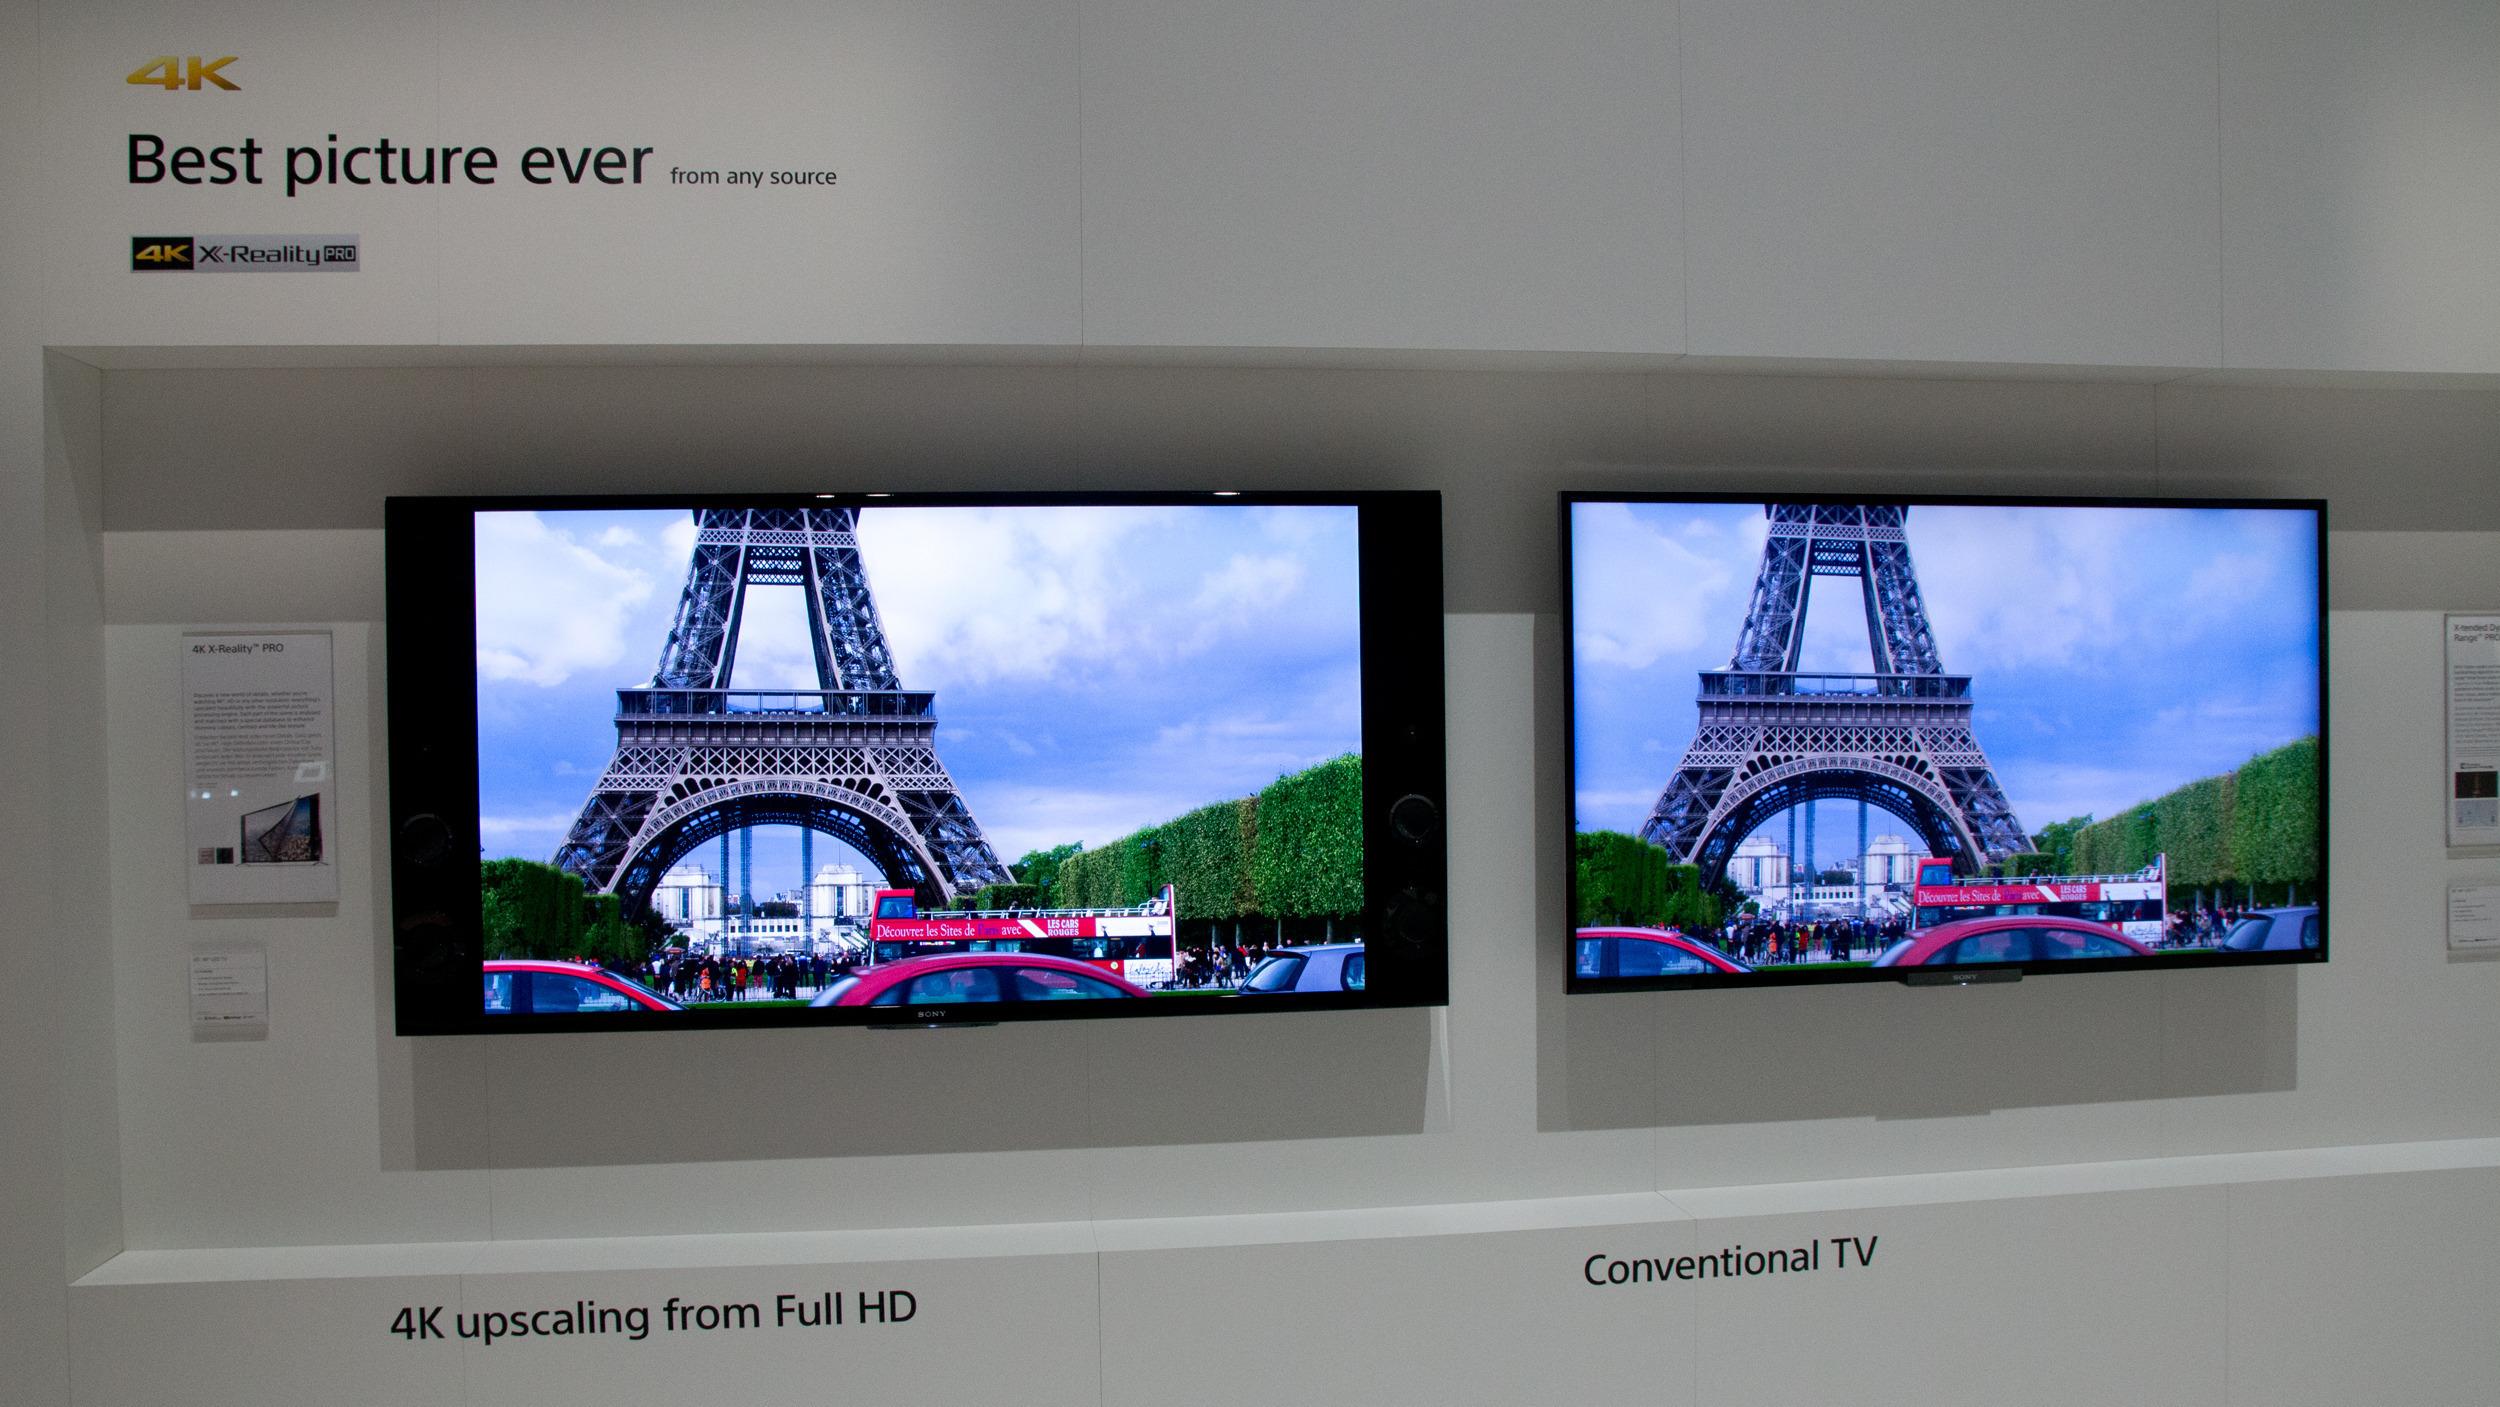 Sony forsøker å vise deg hvorfor det er en god grunn å kjøpe TV-er nettopp fra dem. .Foto: Rolf B. Wegner, Hardware.no